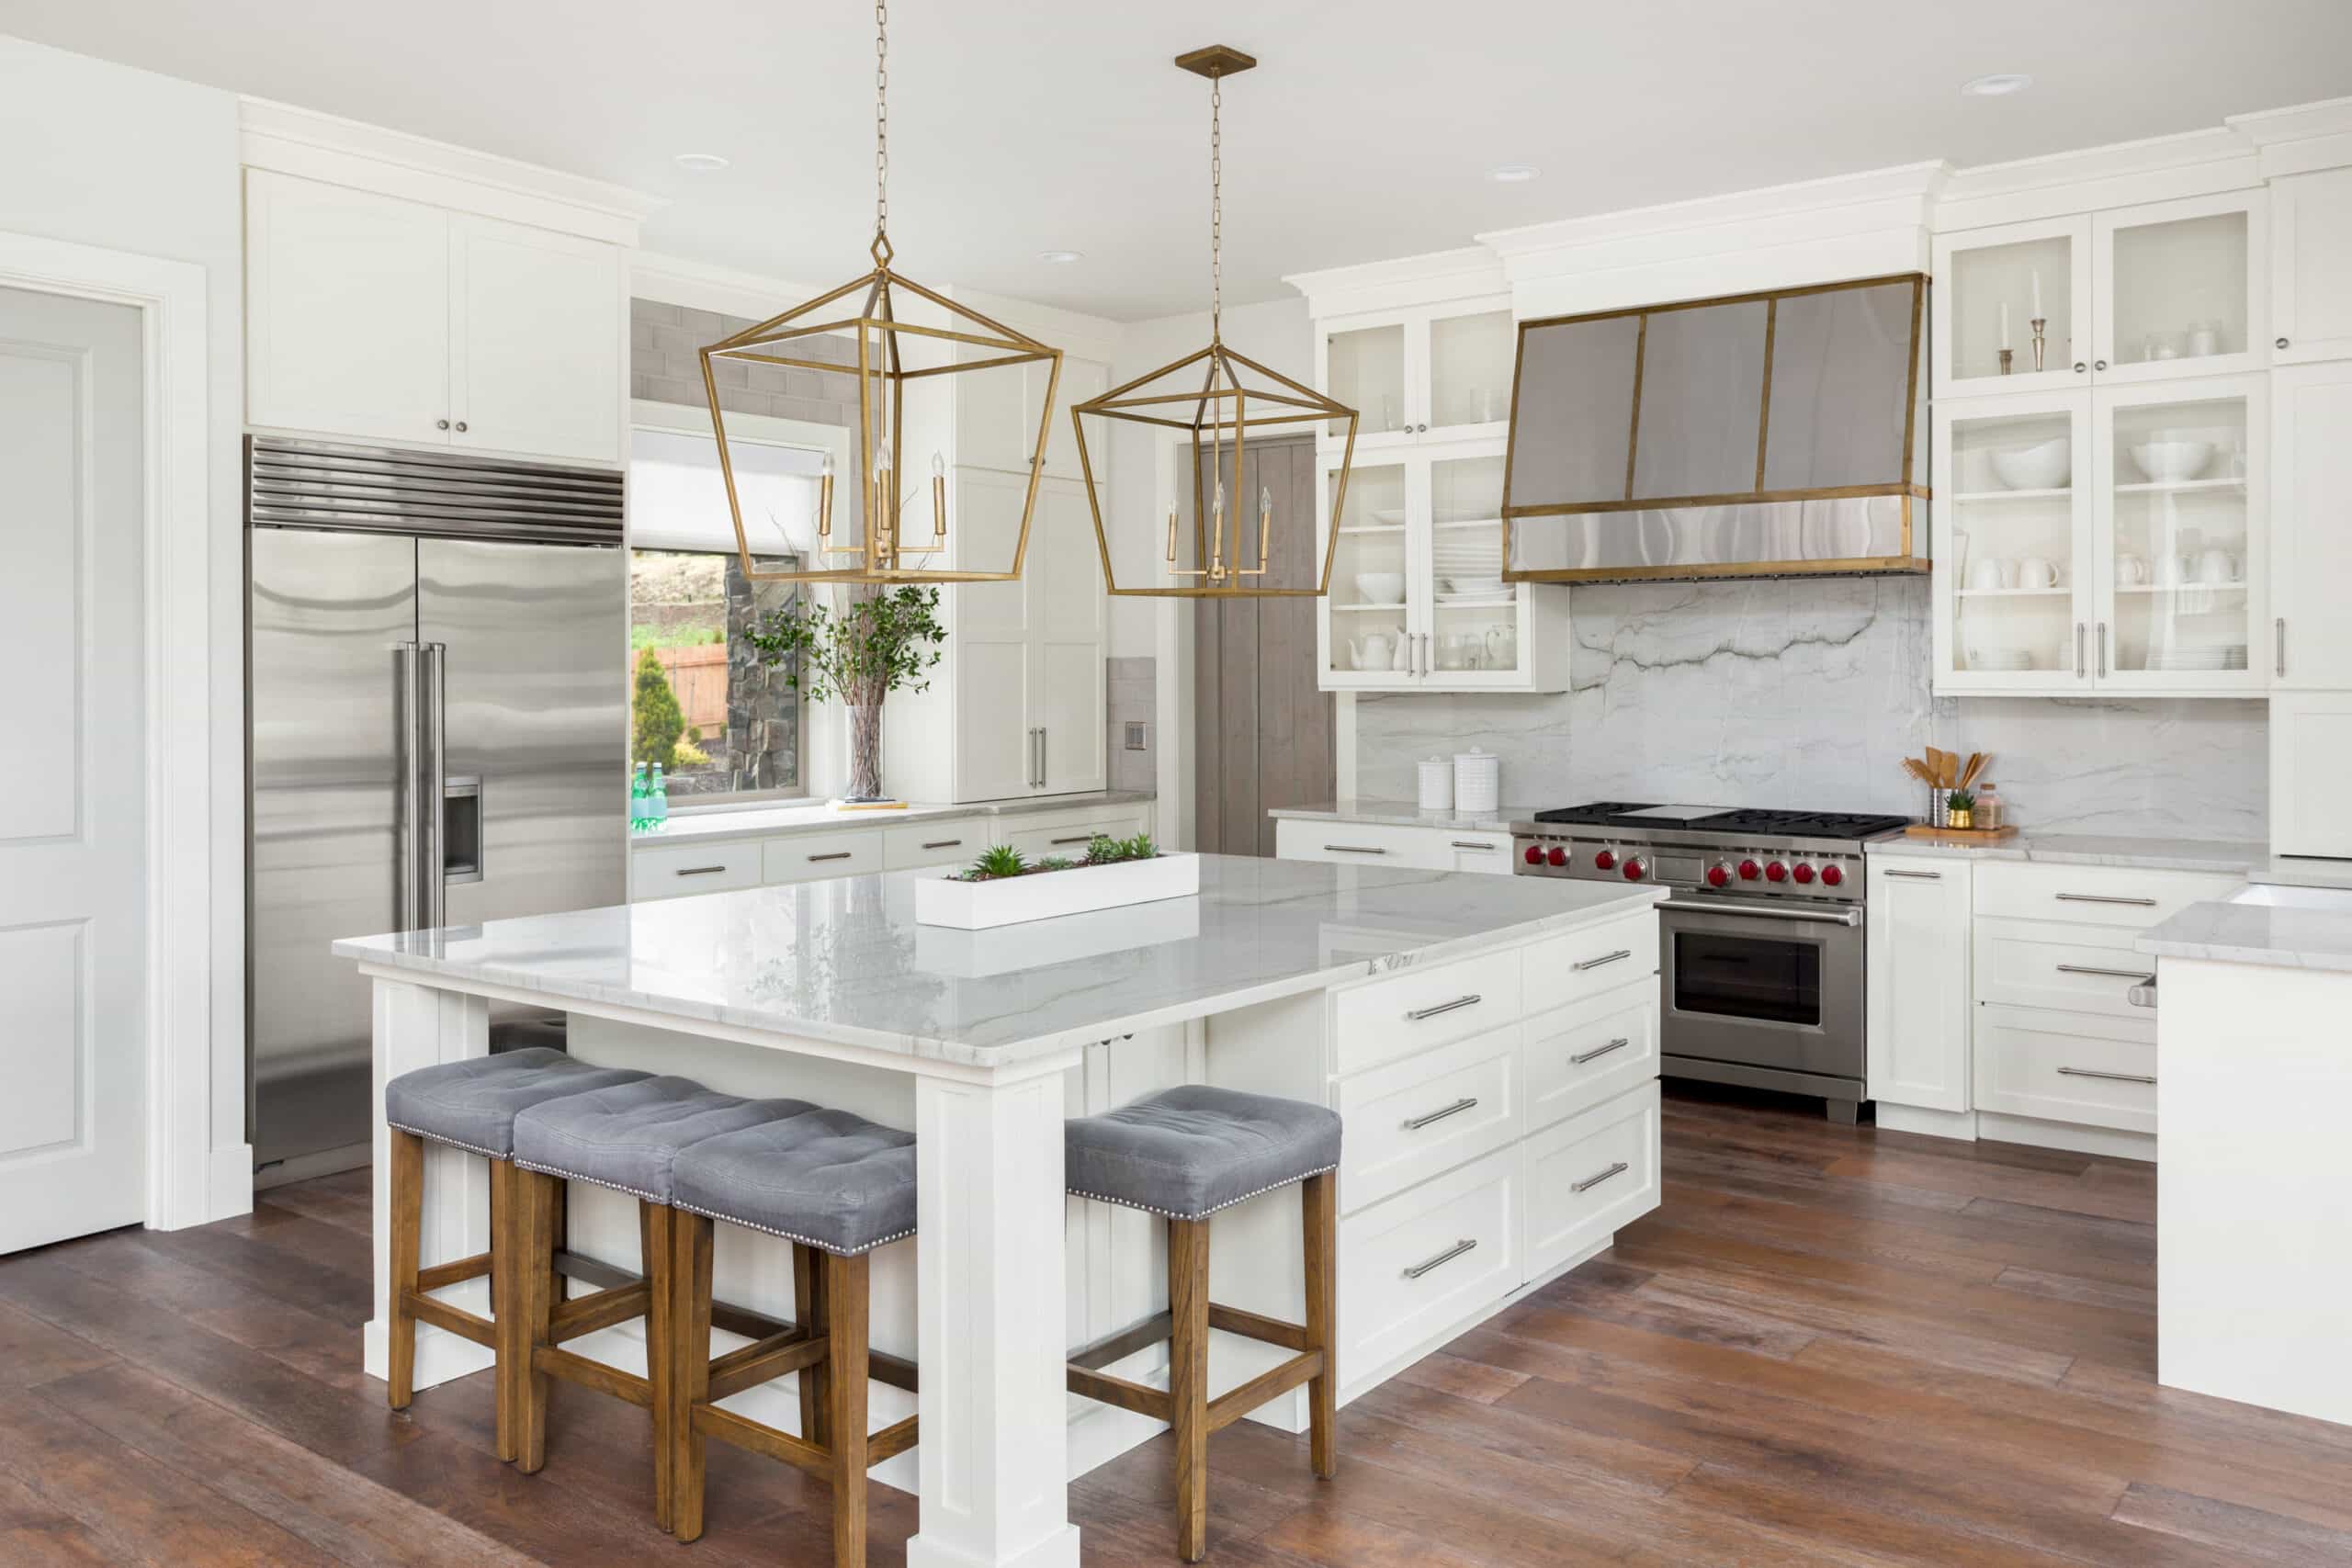 White Kitchen in New Luxury Home